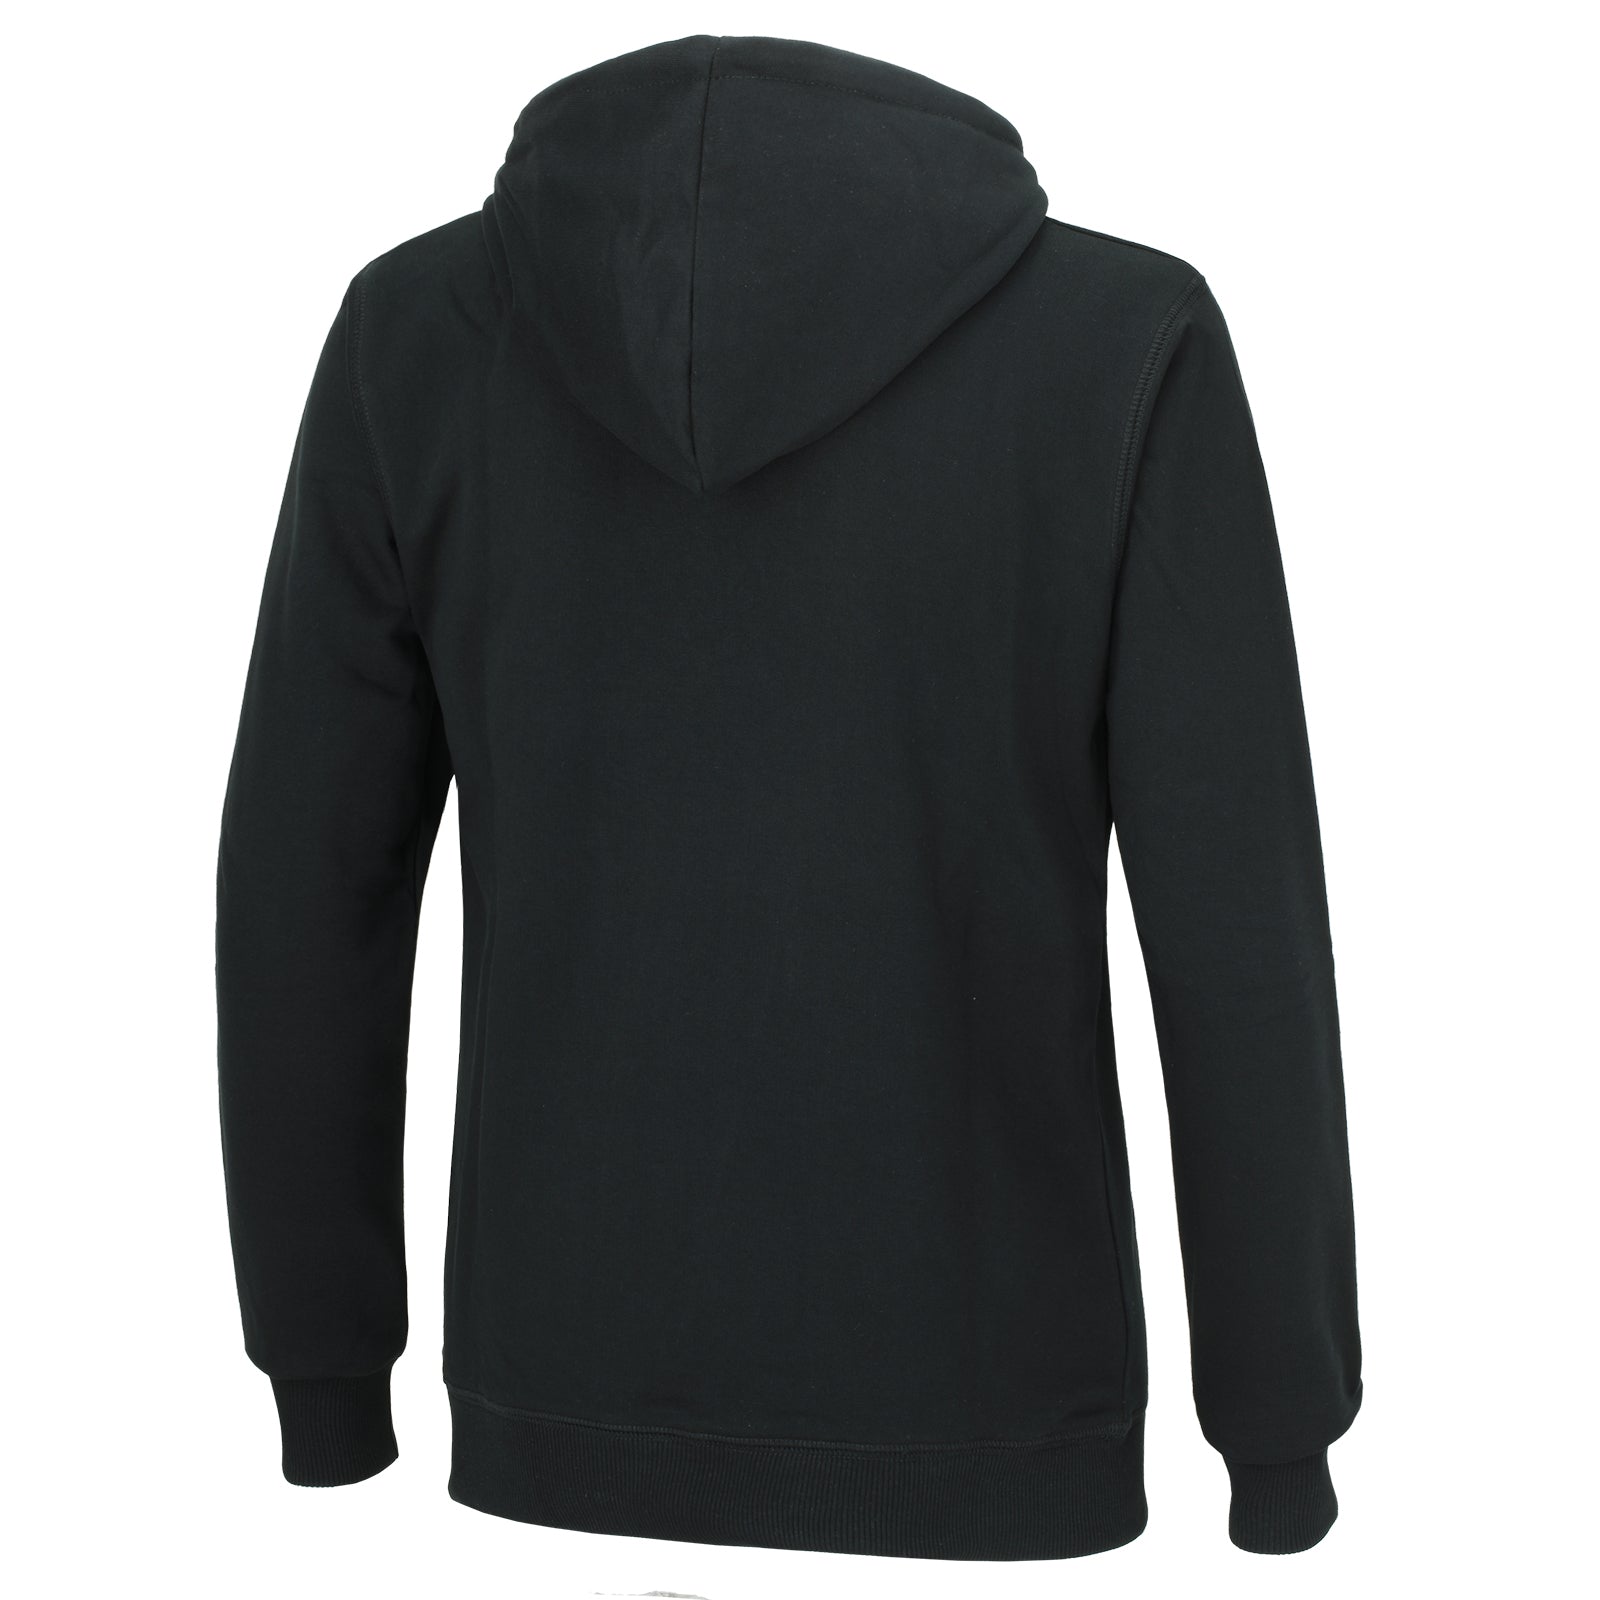 Sweatshirt-mit-kapuze-winter-thermo-pro-hoodie-sweater-herren-damen-s-m-l-xl-xxl-schwarz-back